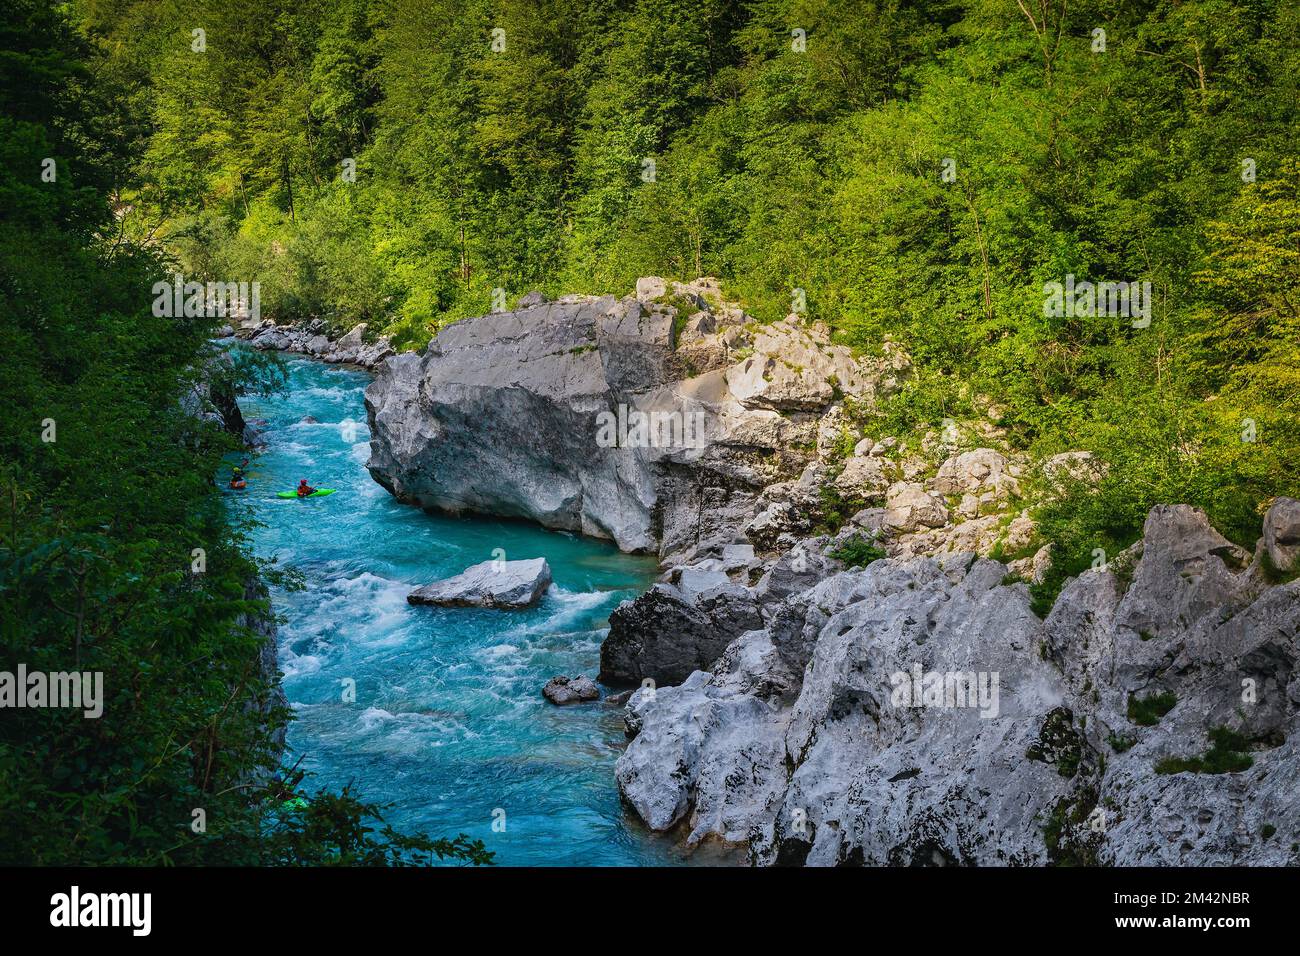 Pittoresco paesaggio naturale con kayak e meta escursionistica. Bel fiume Soca con gola rocciosa nella foresta verde, Bovec, Slovenia, Europa Foto Stock